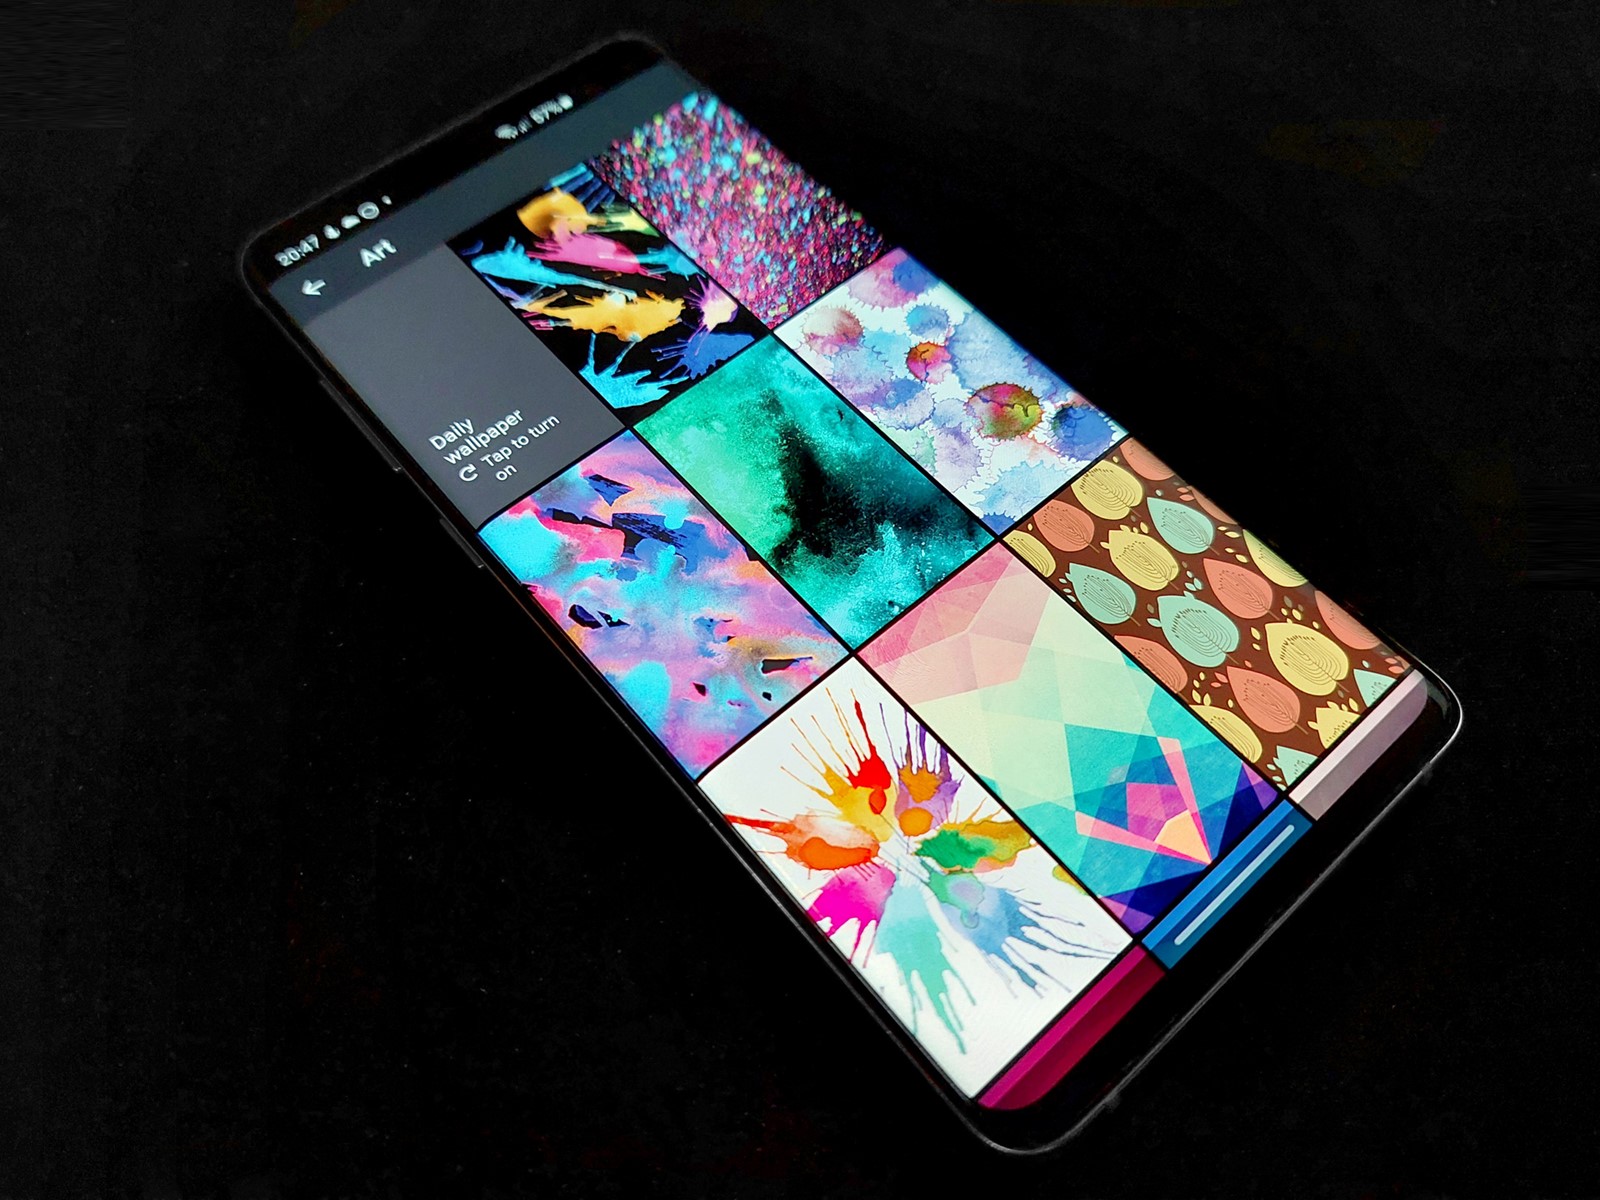 Wallpapers - aplikacija za pozadine na Androidu koja je preuzeta više od  500 milijuna puta - App dana @ Bug.hr